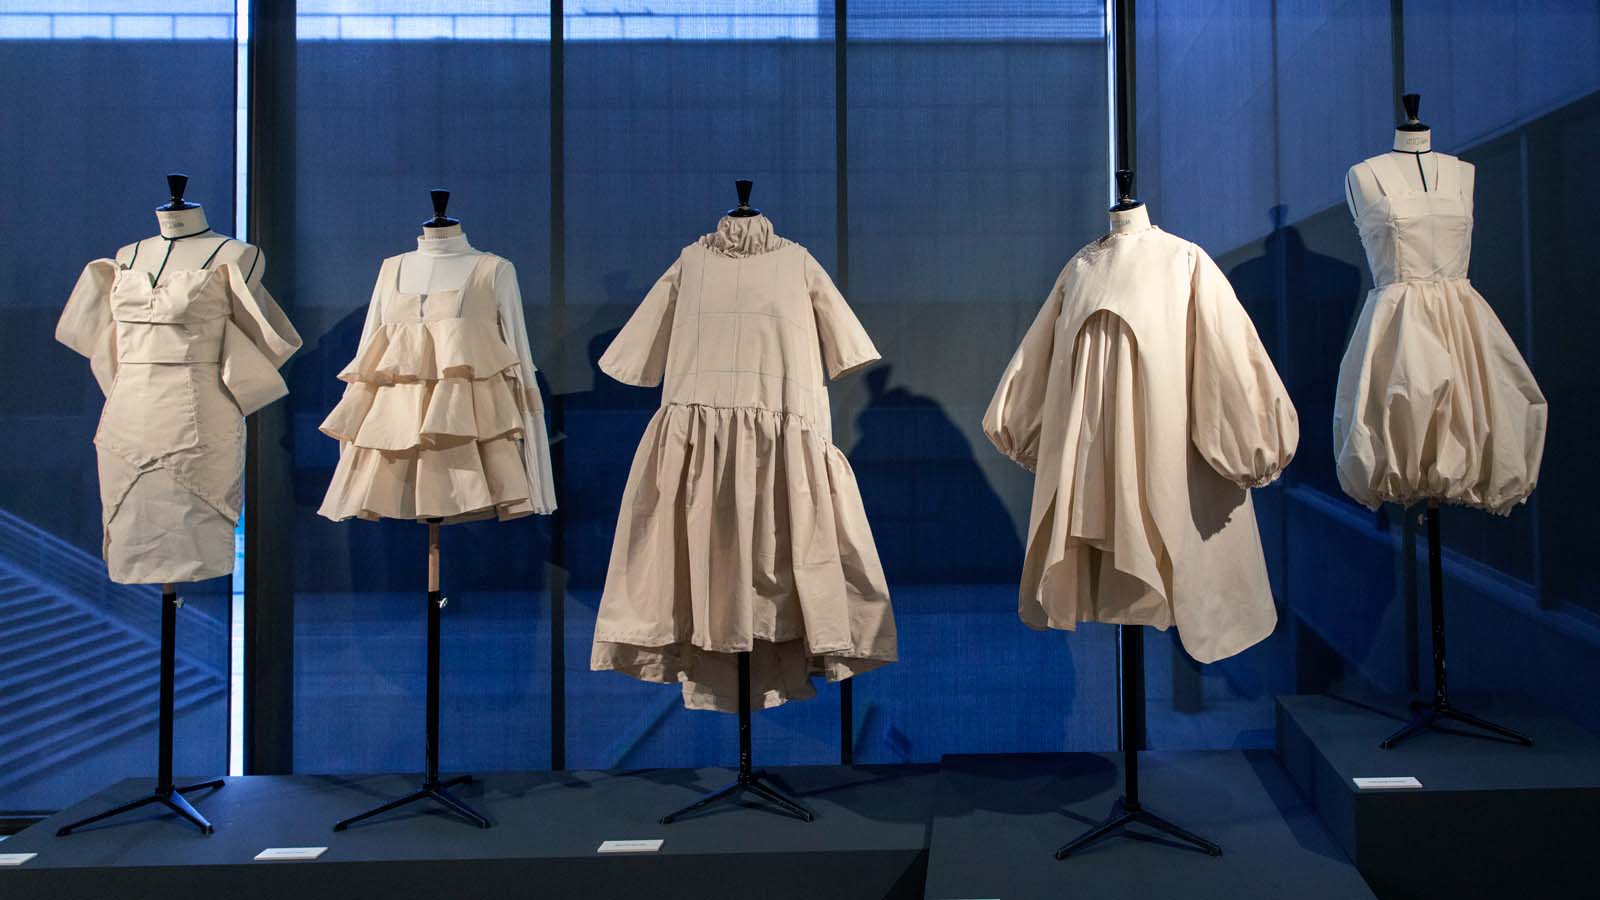 Alumnos de Moda de IED Madrid investigarán la obra de Balenciaga en proyecto internacional